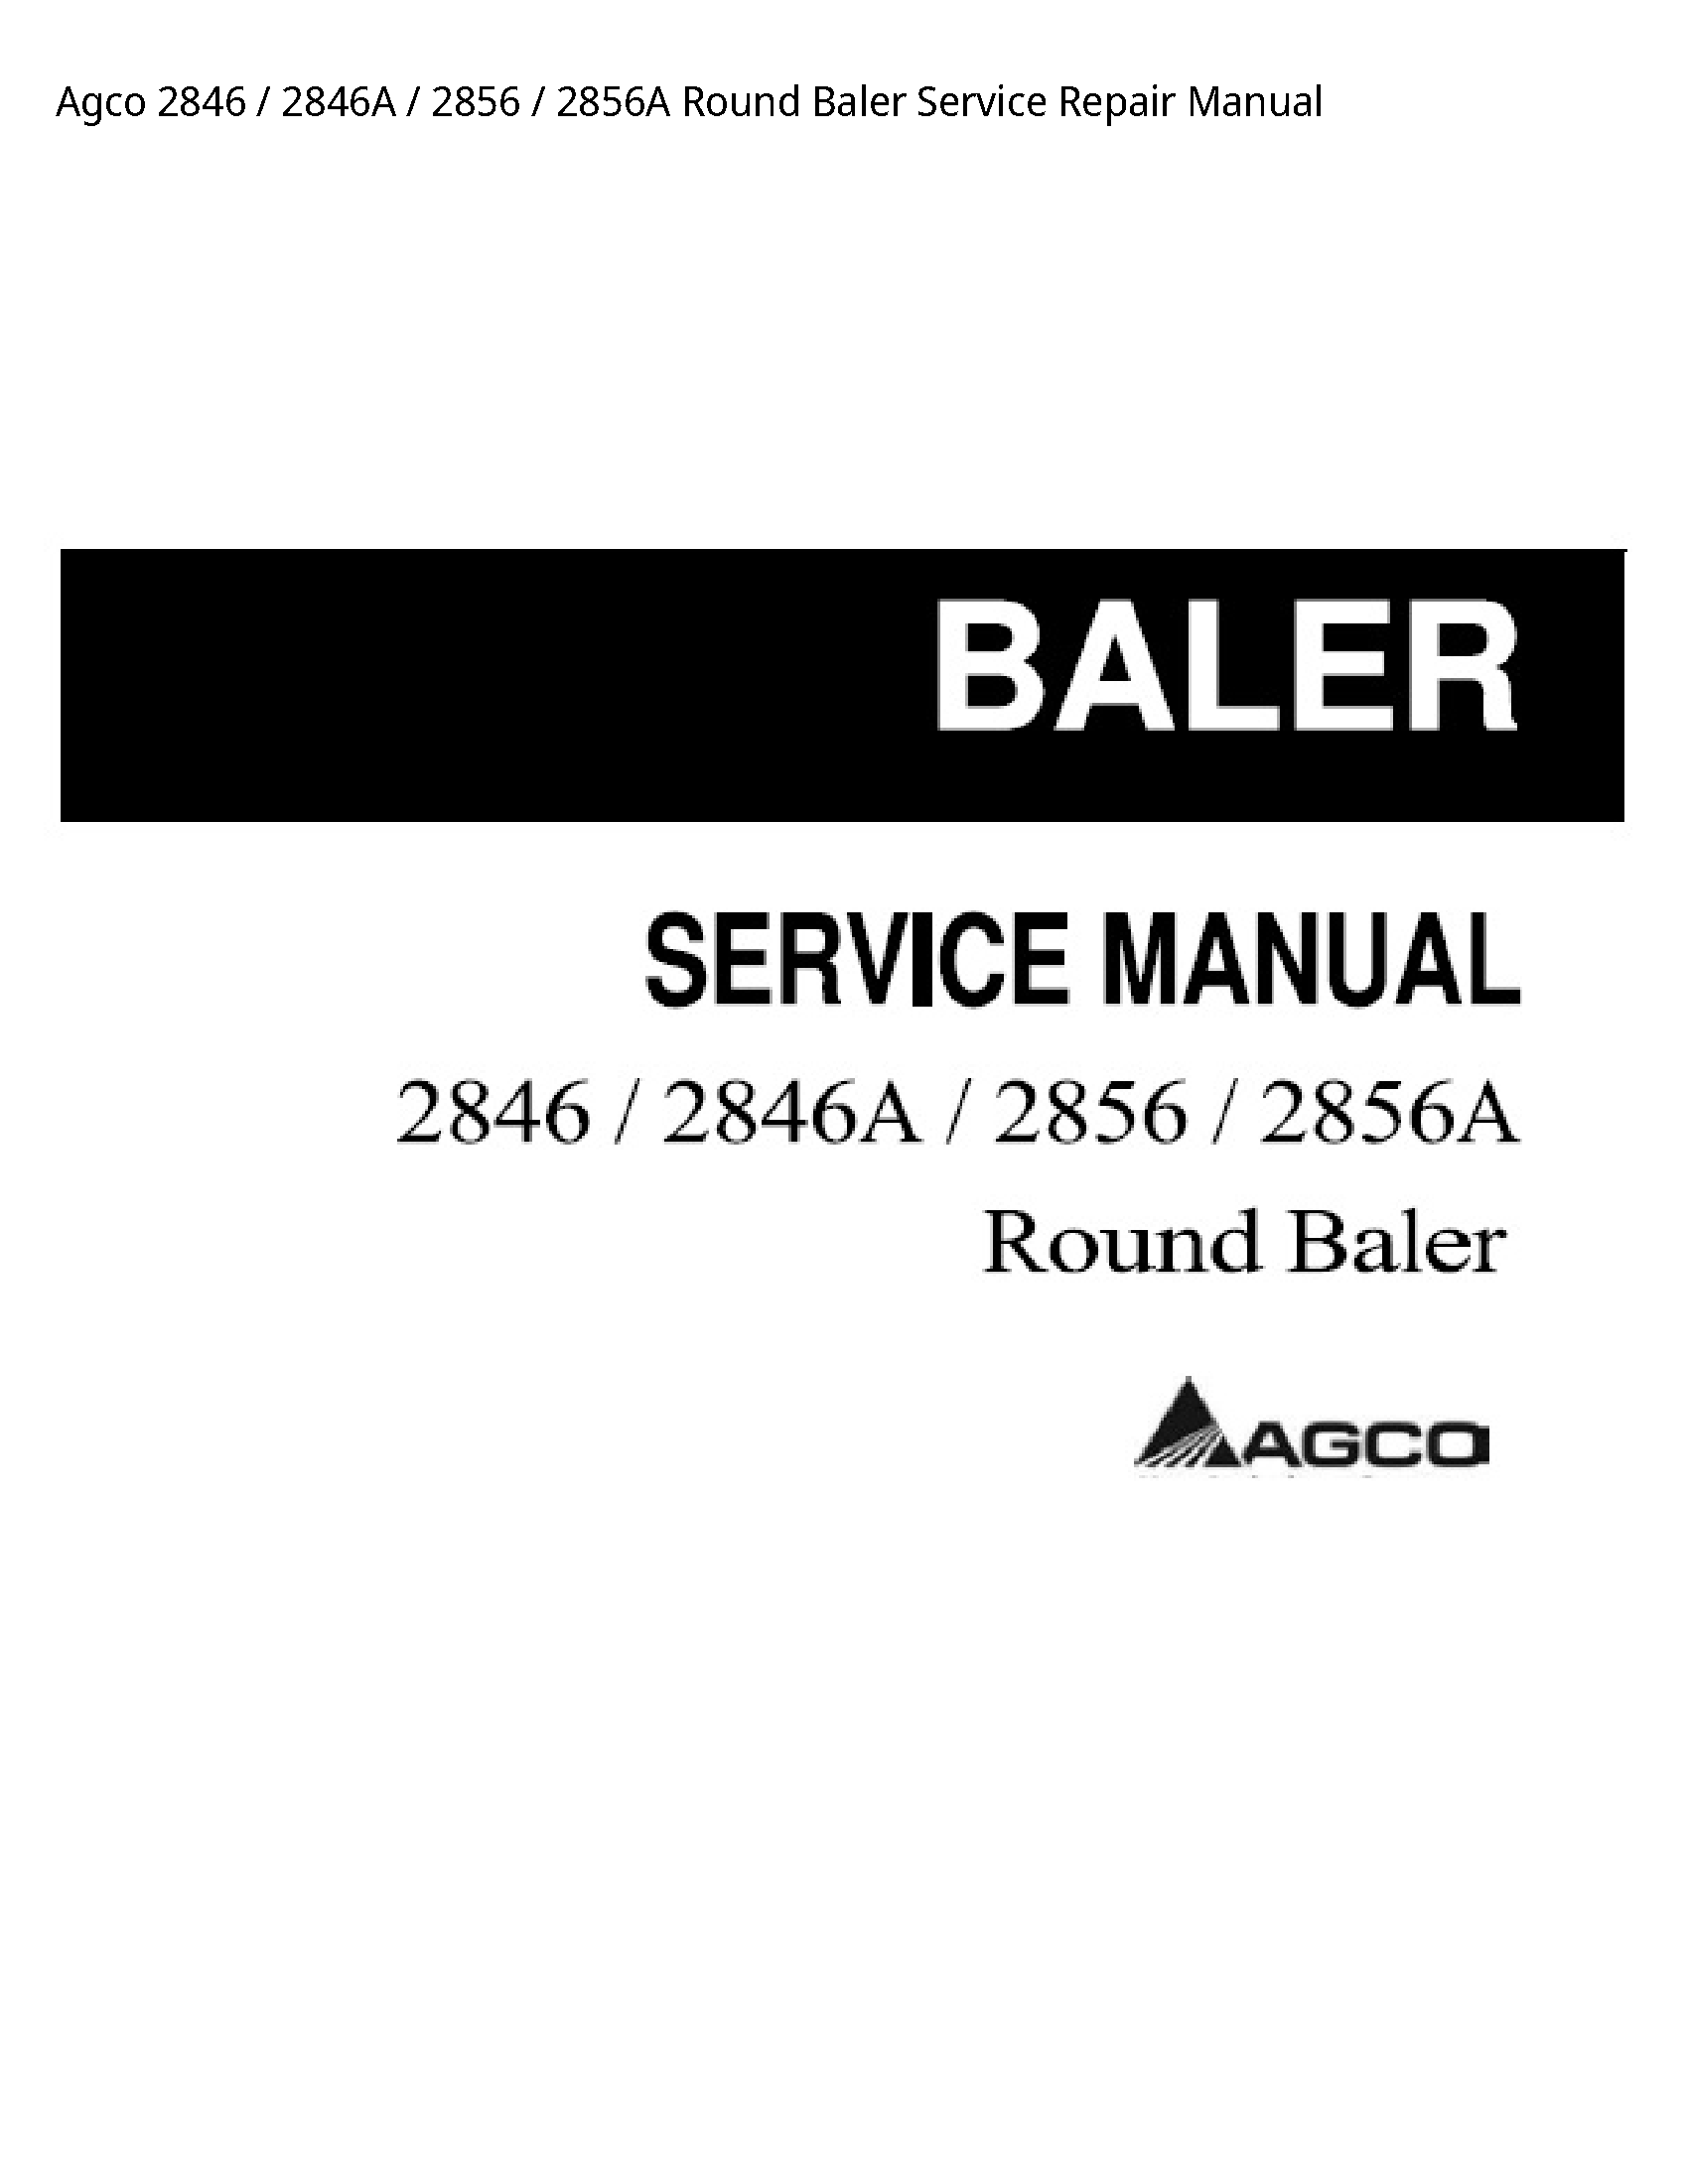 AGCO 2846 Round Baler manual